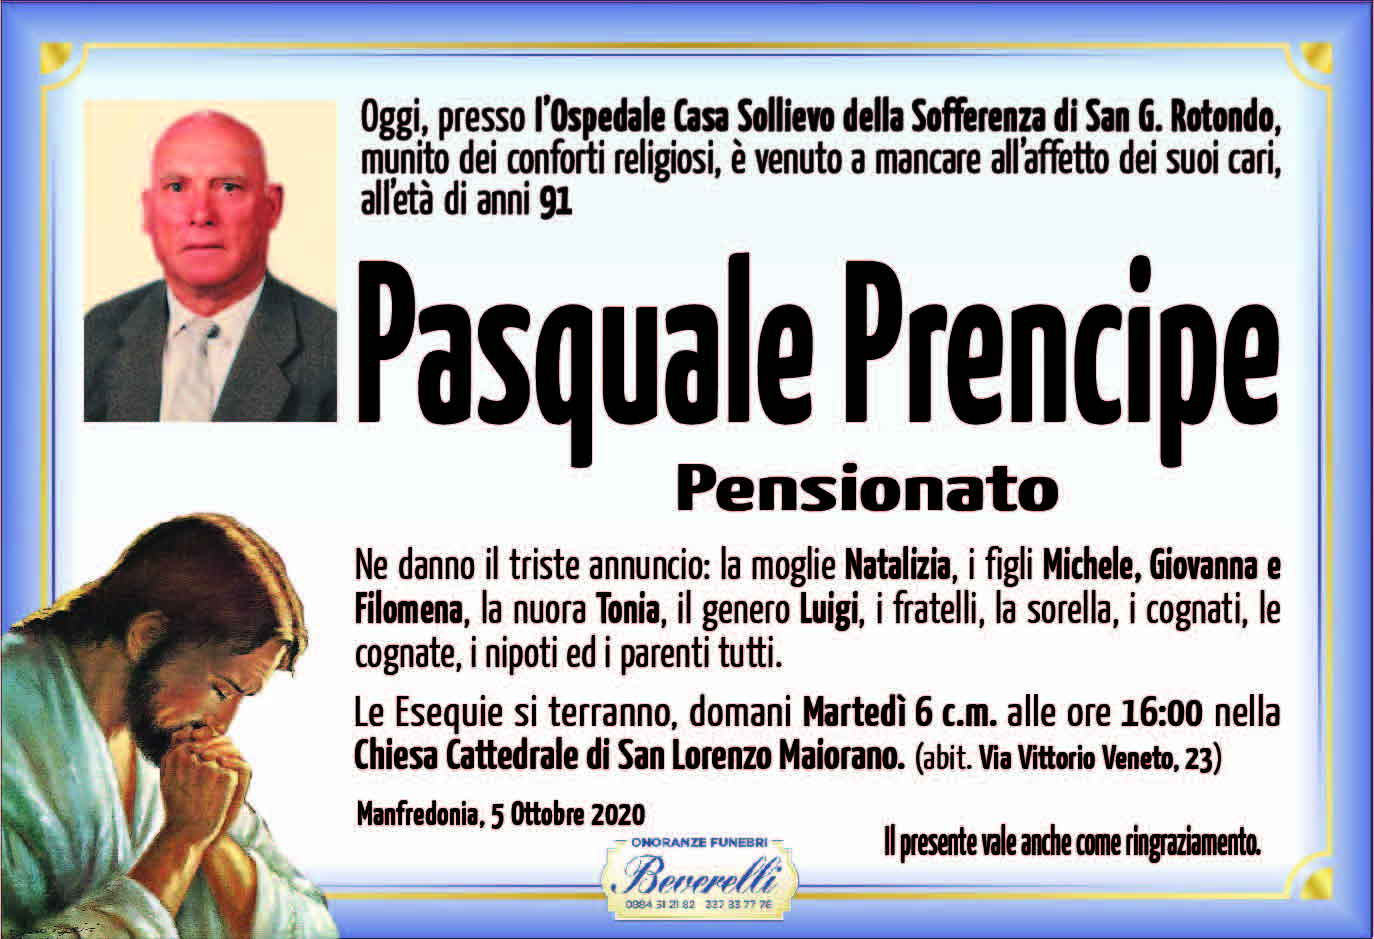 Pasquale Prencipe